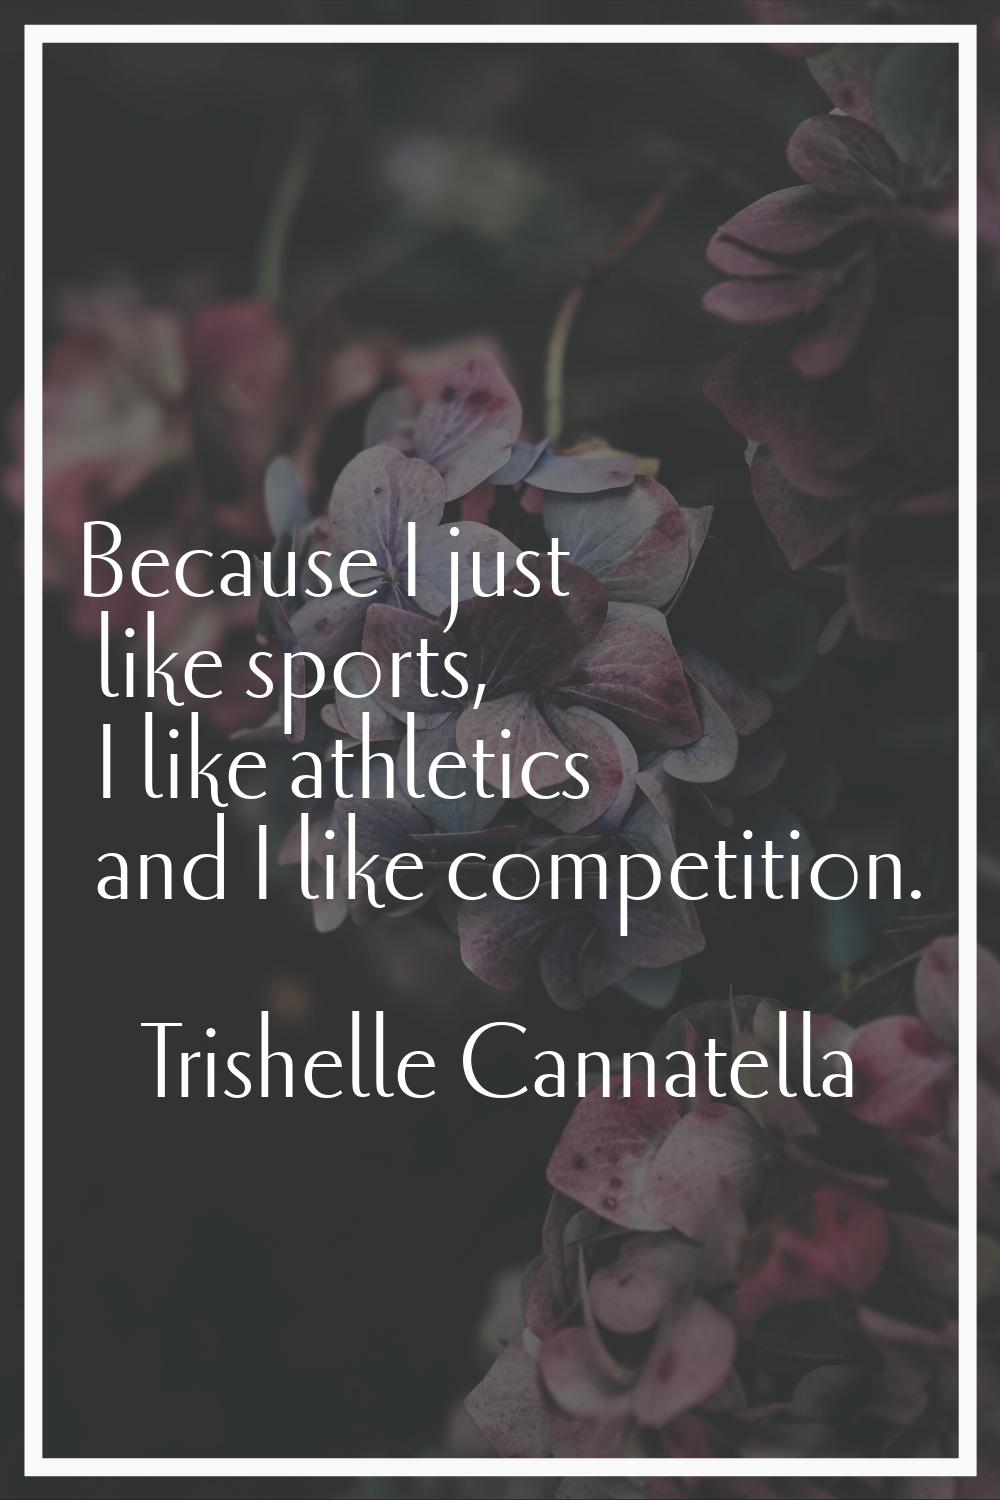 Because I just like sports, I like athletics and I like competition.